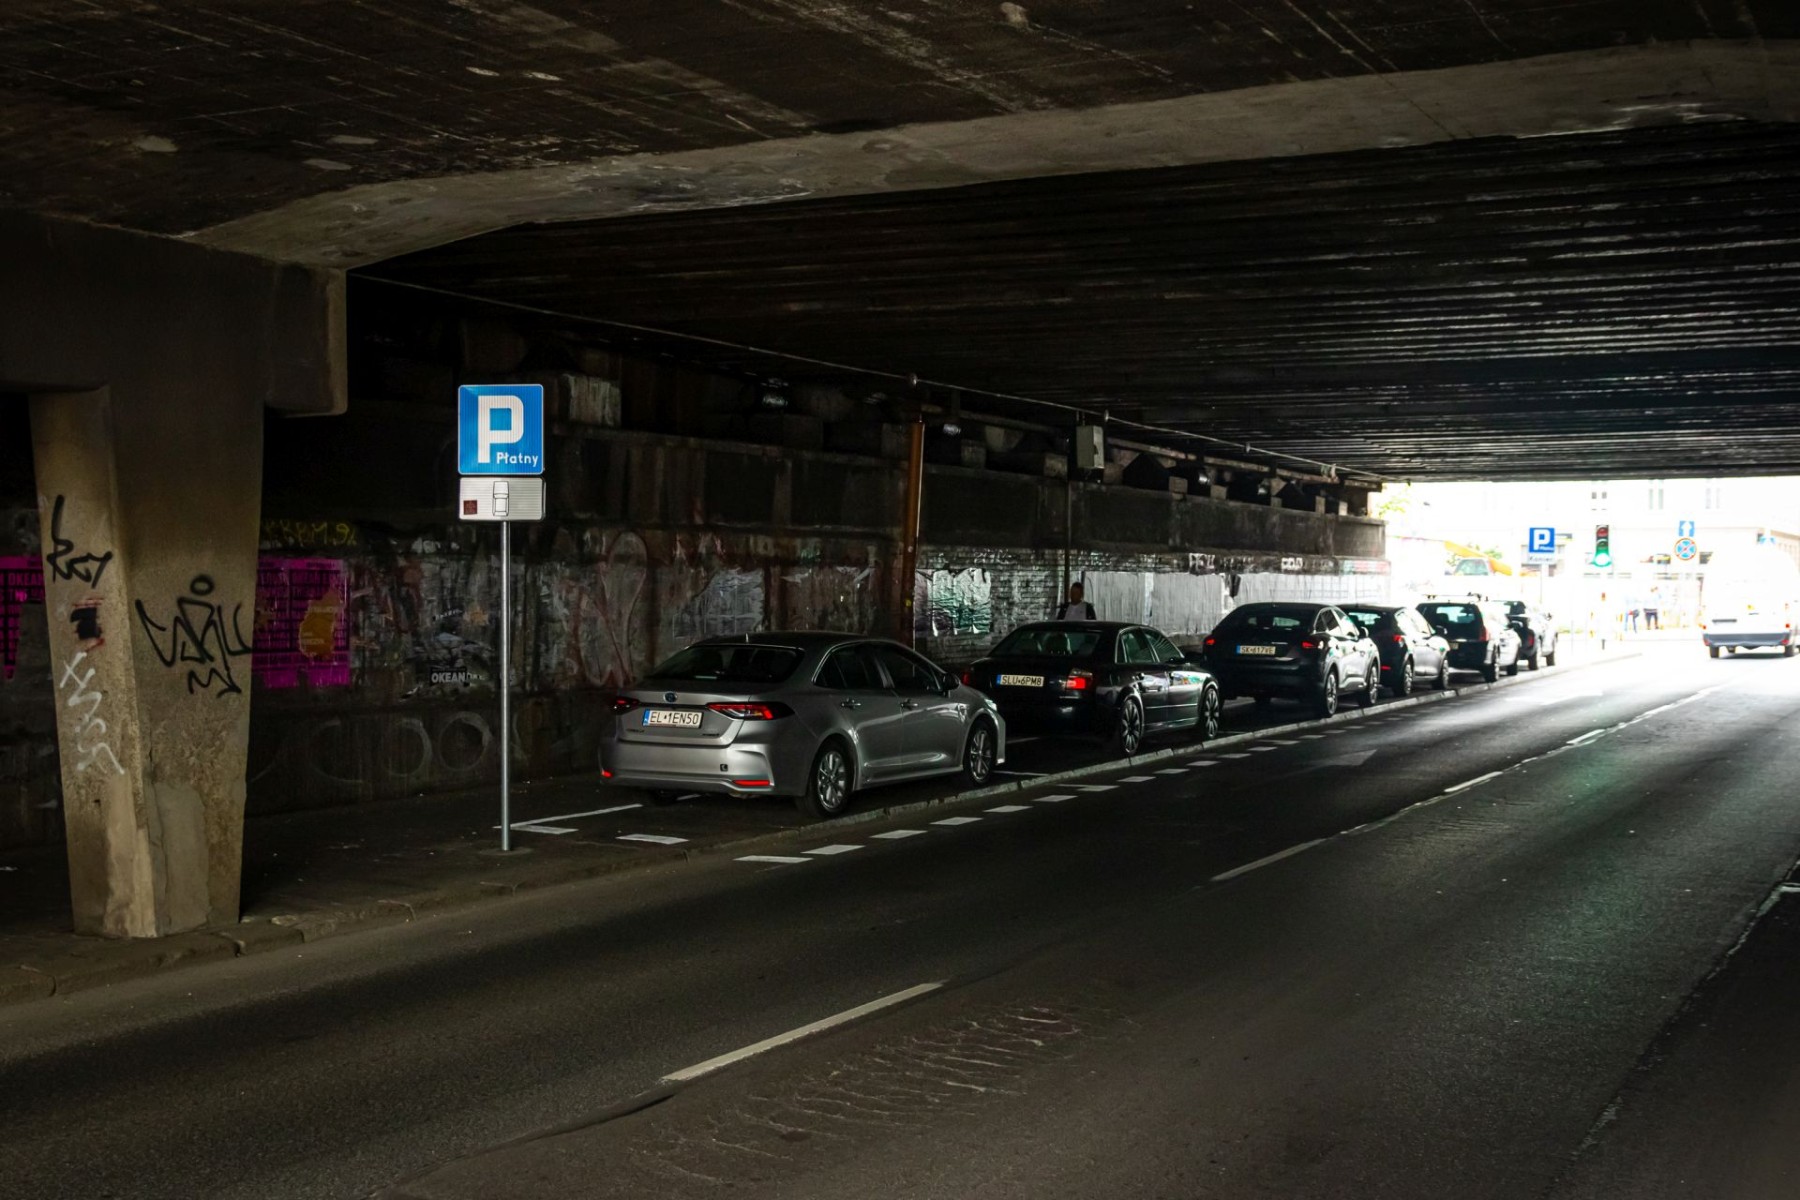 samochody na ulicy francuskiej zaparkowane pod wiaduktem